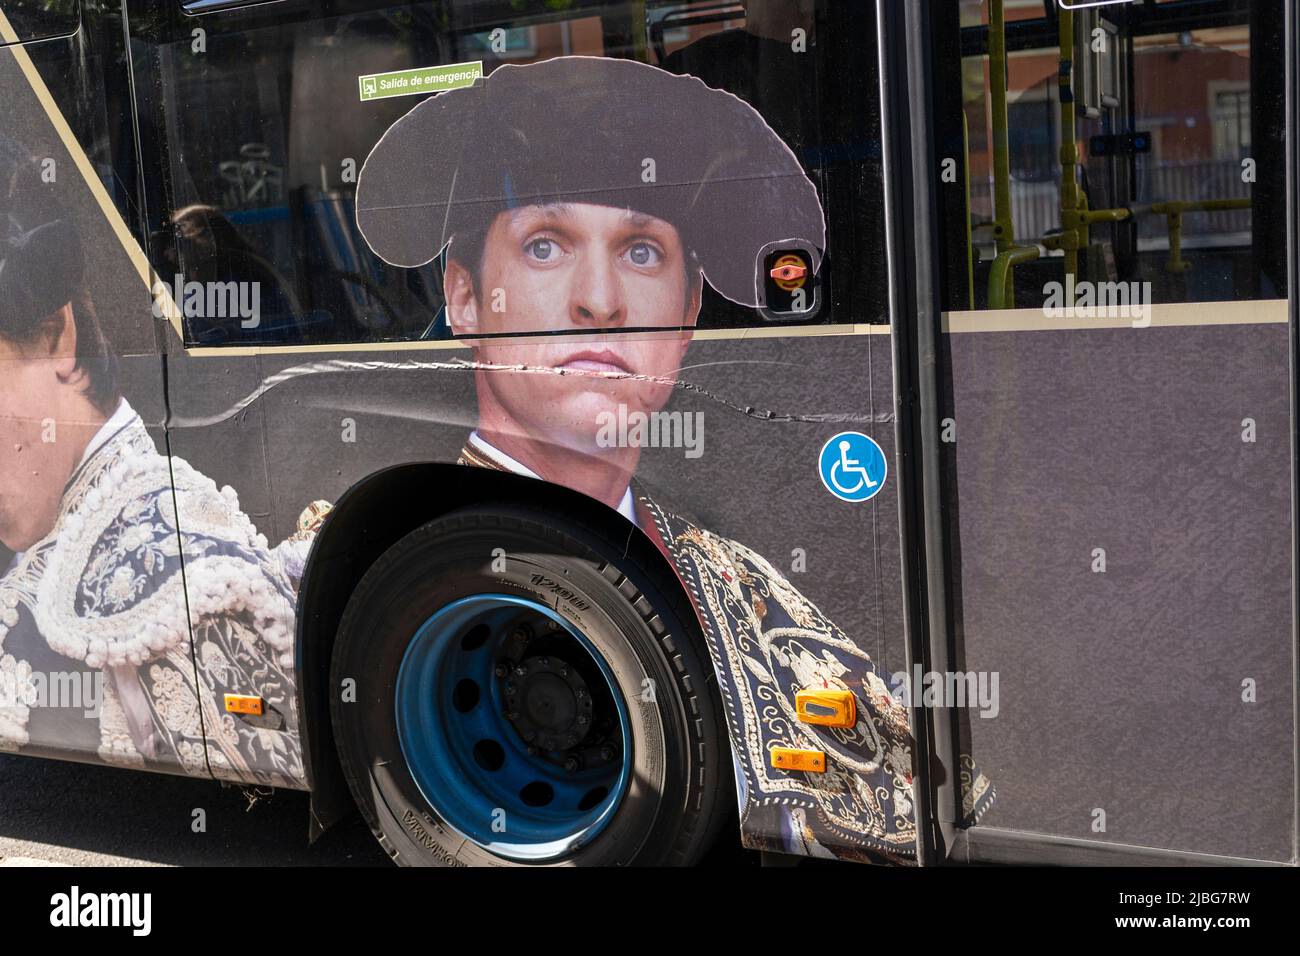 Matador-Bild auf einem Bus in Madrid Spanien Stockfoto